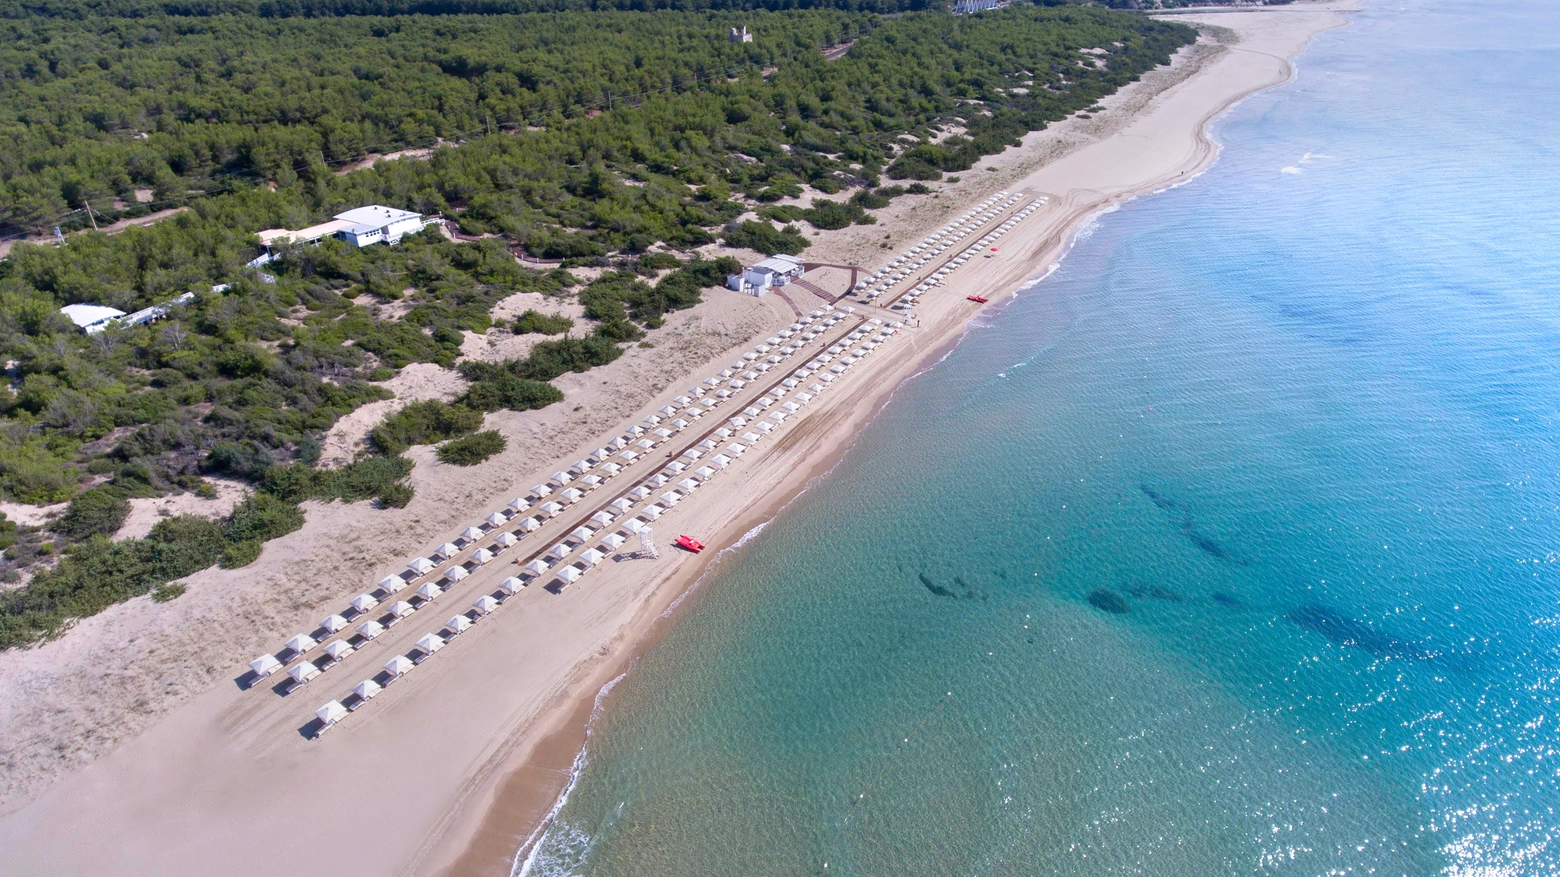 La spiaggia del Kalidria hotel & Thalasso Spa, immersa nella riserva naturale di Stornara